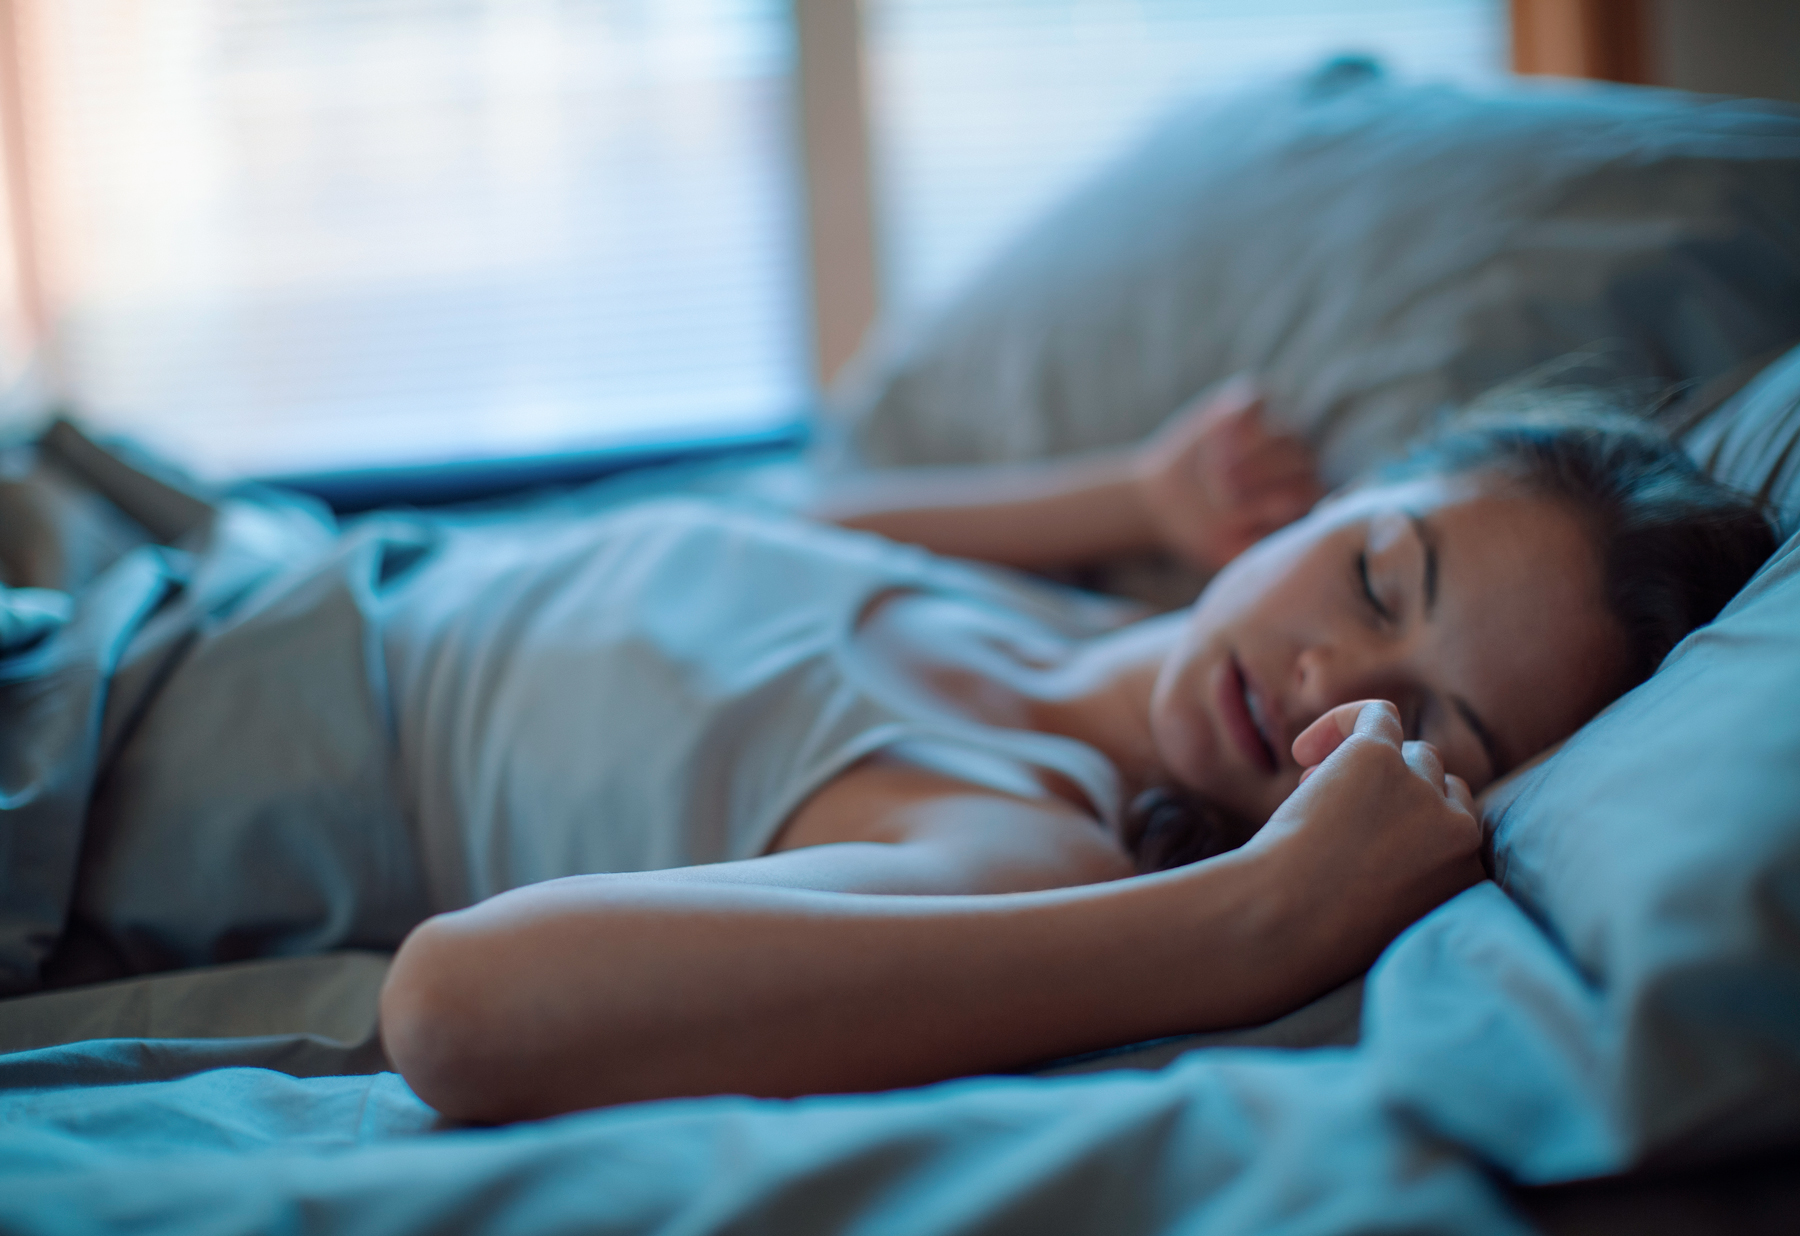 როგორ უნდა გადაჭრათ ძილთან დაკავშირებული ყველაზე გავრცელებული პრობლემები? – 9 მეცნიერული გზა